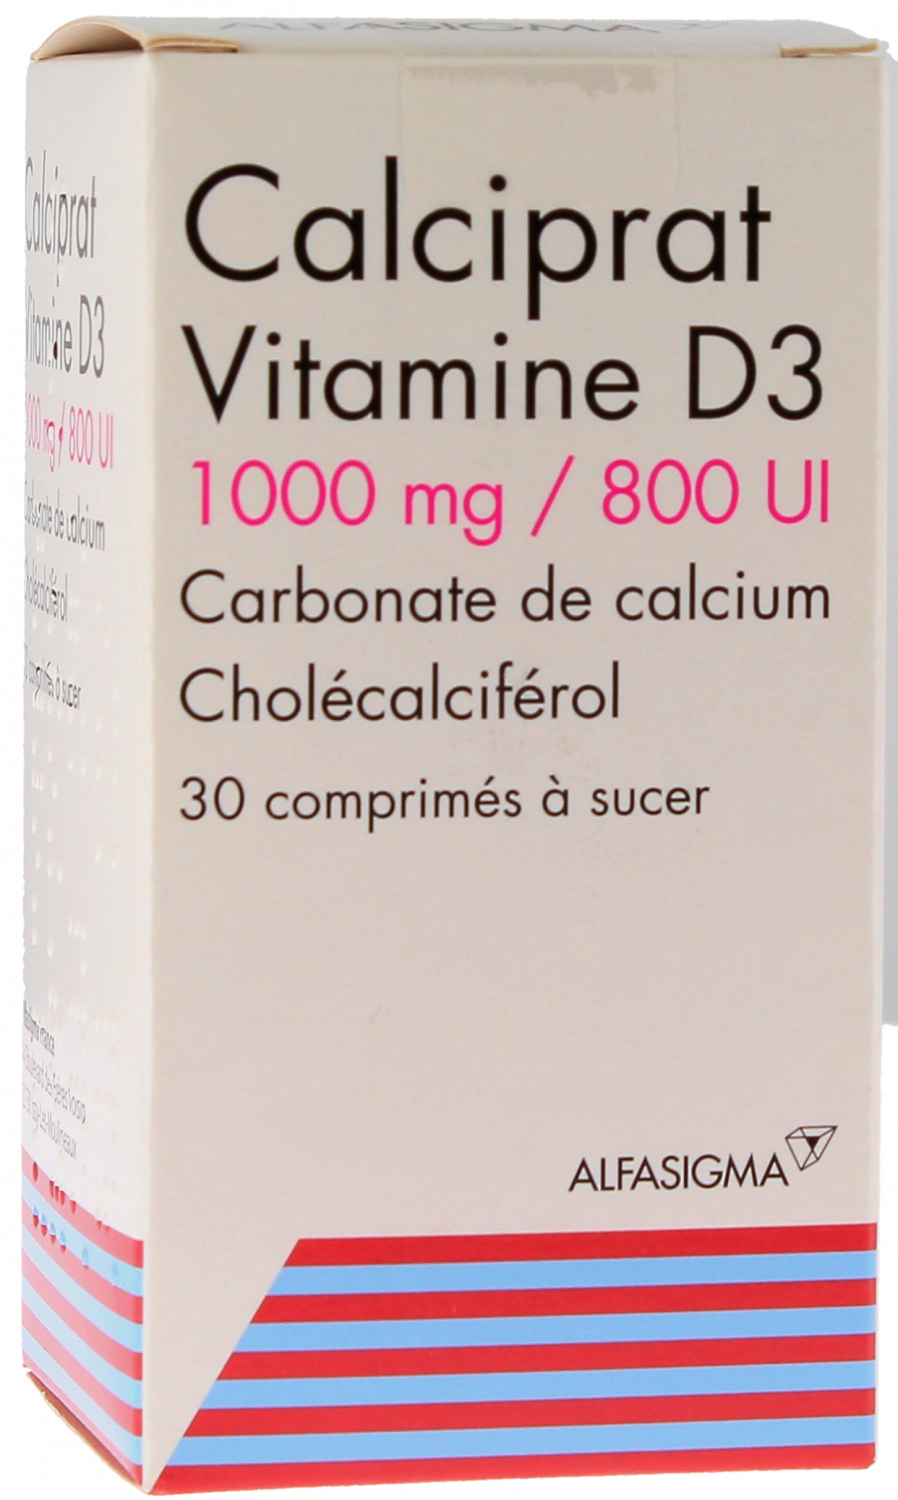 Calciprat Vitamine D3 1000mg/800 U.I - 30 comprimés à sucer